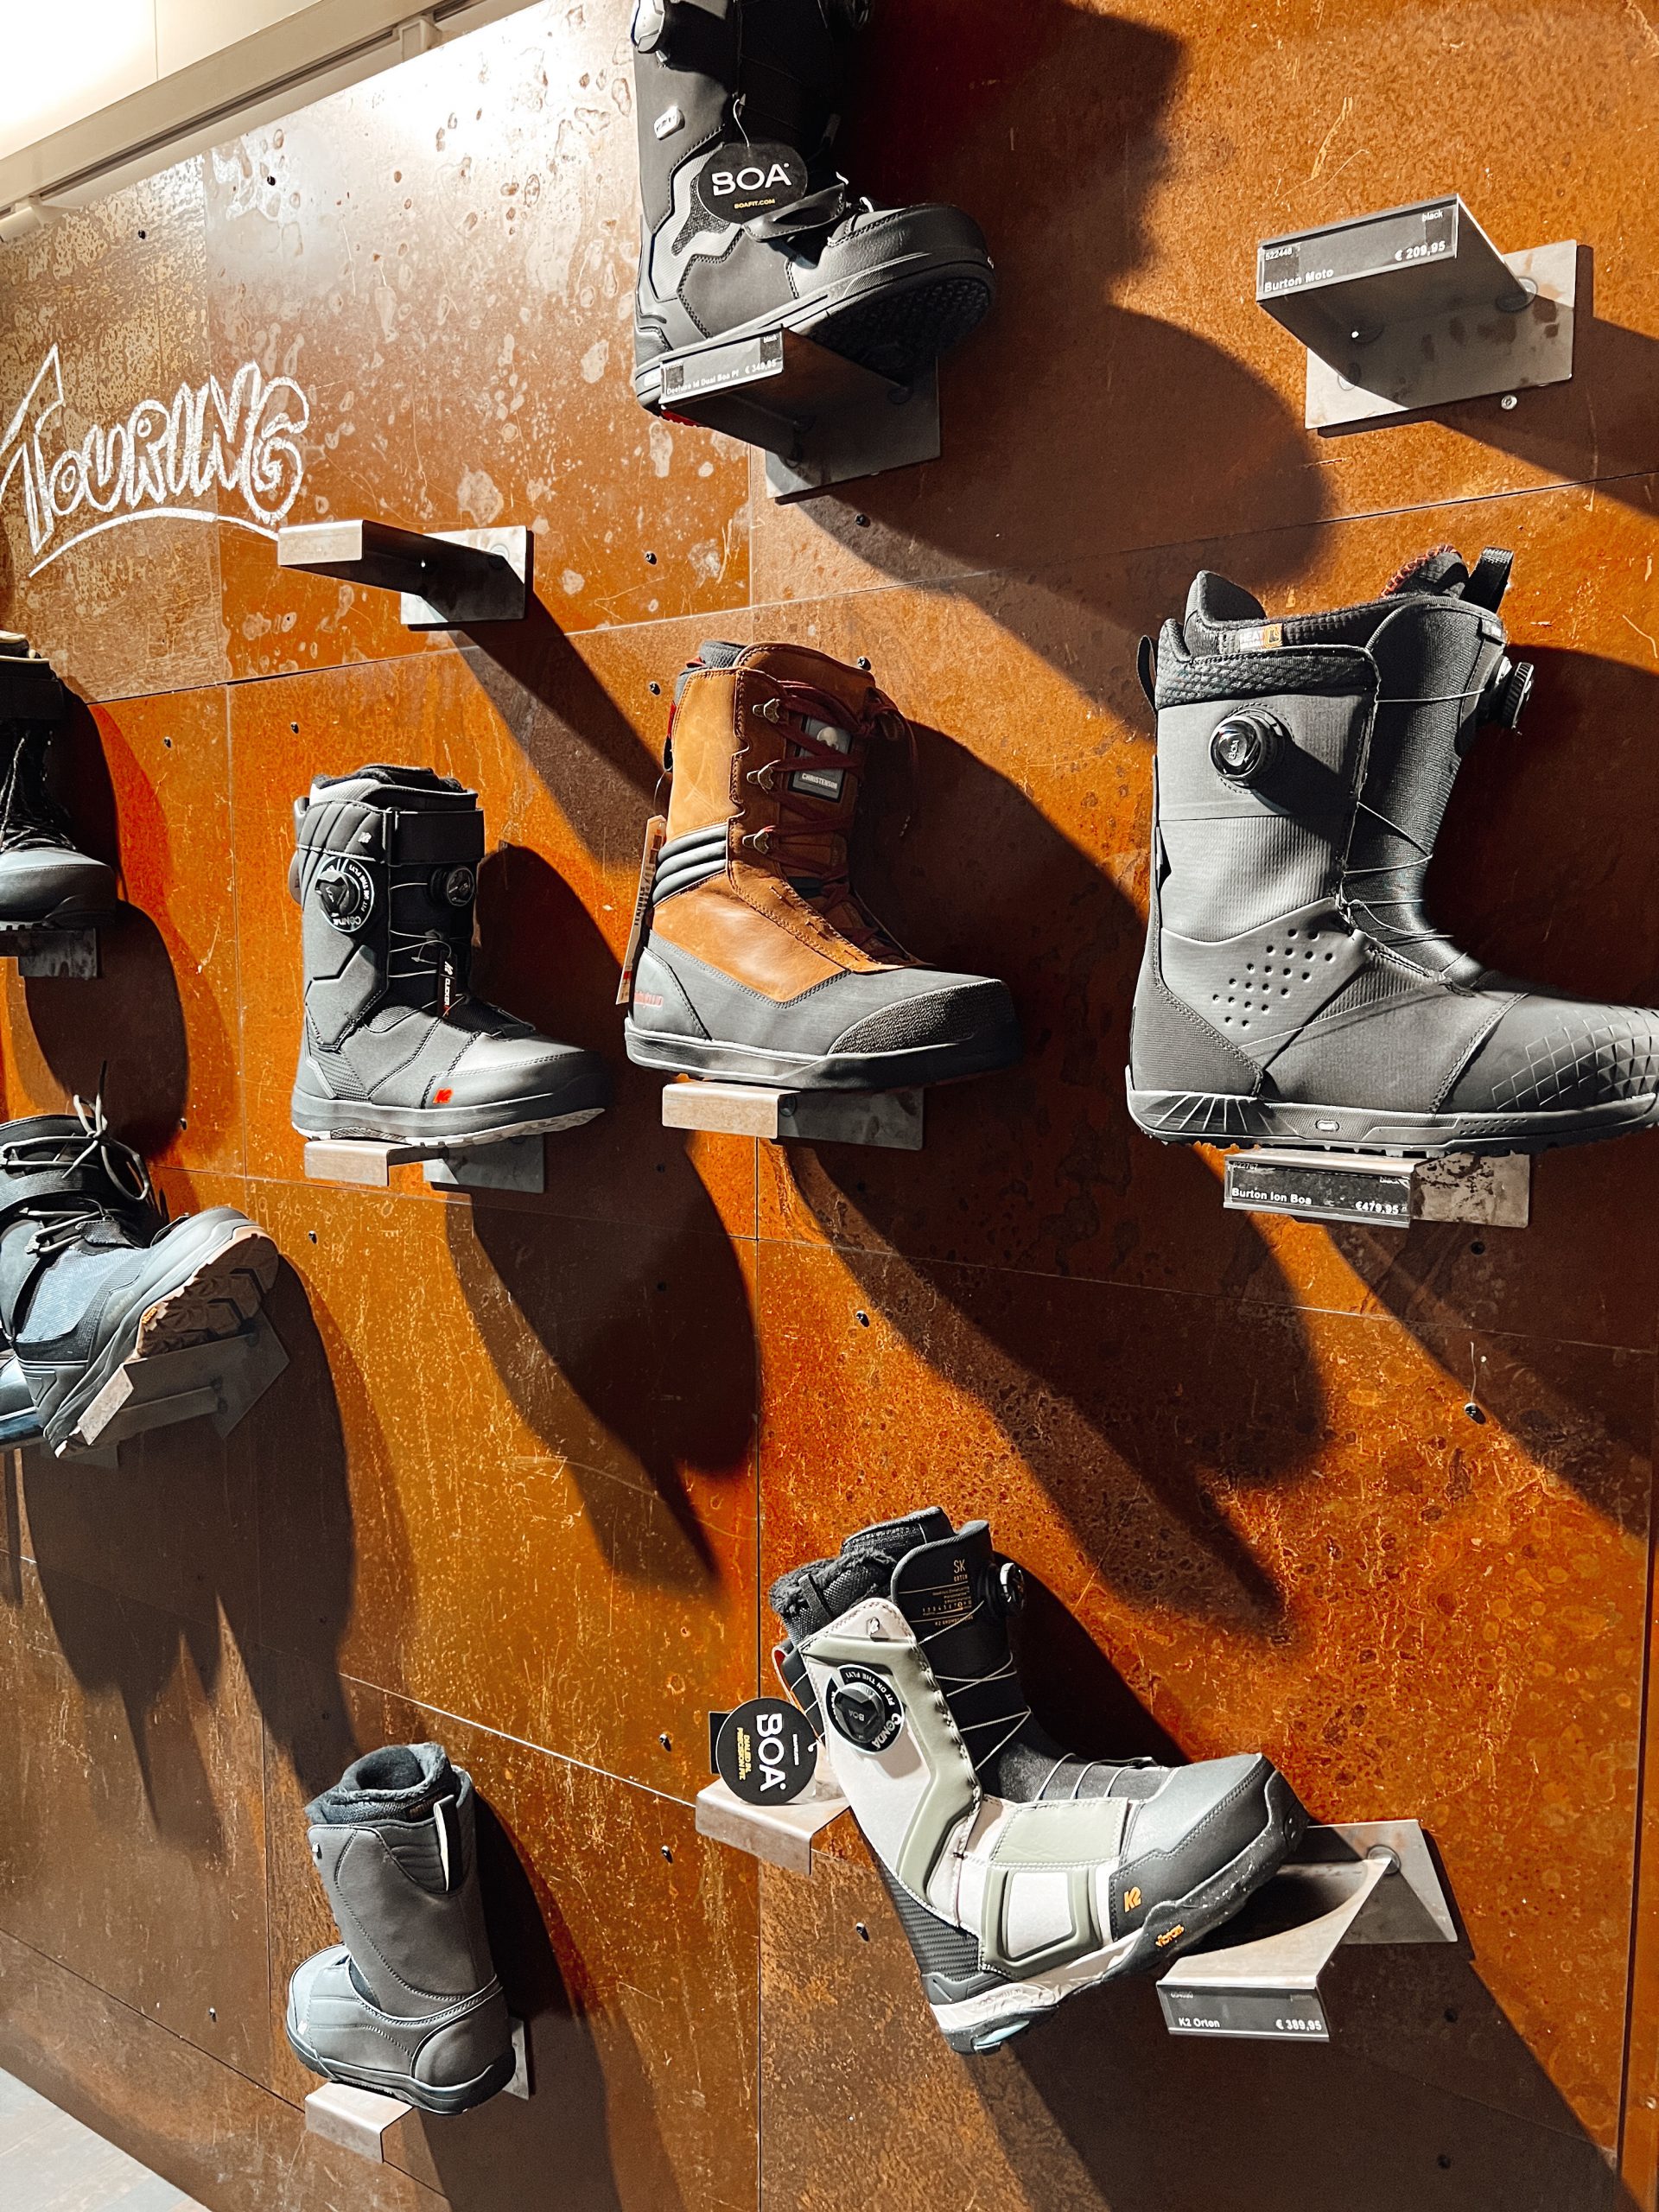 verschiedene Schuhe (Snowboard, Winterstiefel) auf Halterungen an der Wand eines Geschäfts